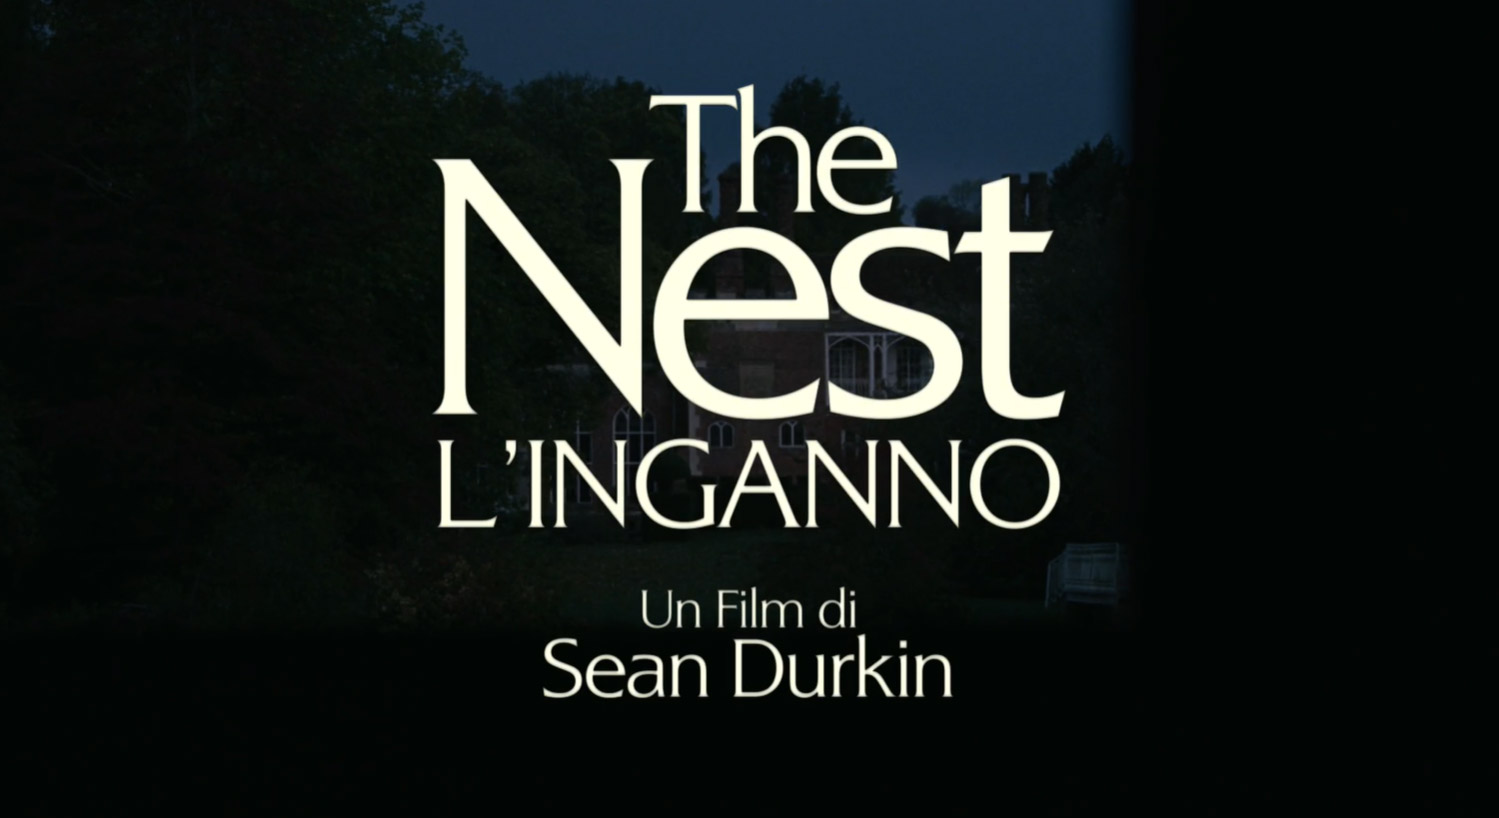 Trailer The Nest - L'inganno di Sean Durkin